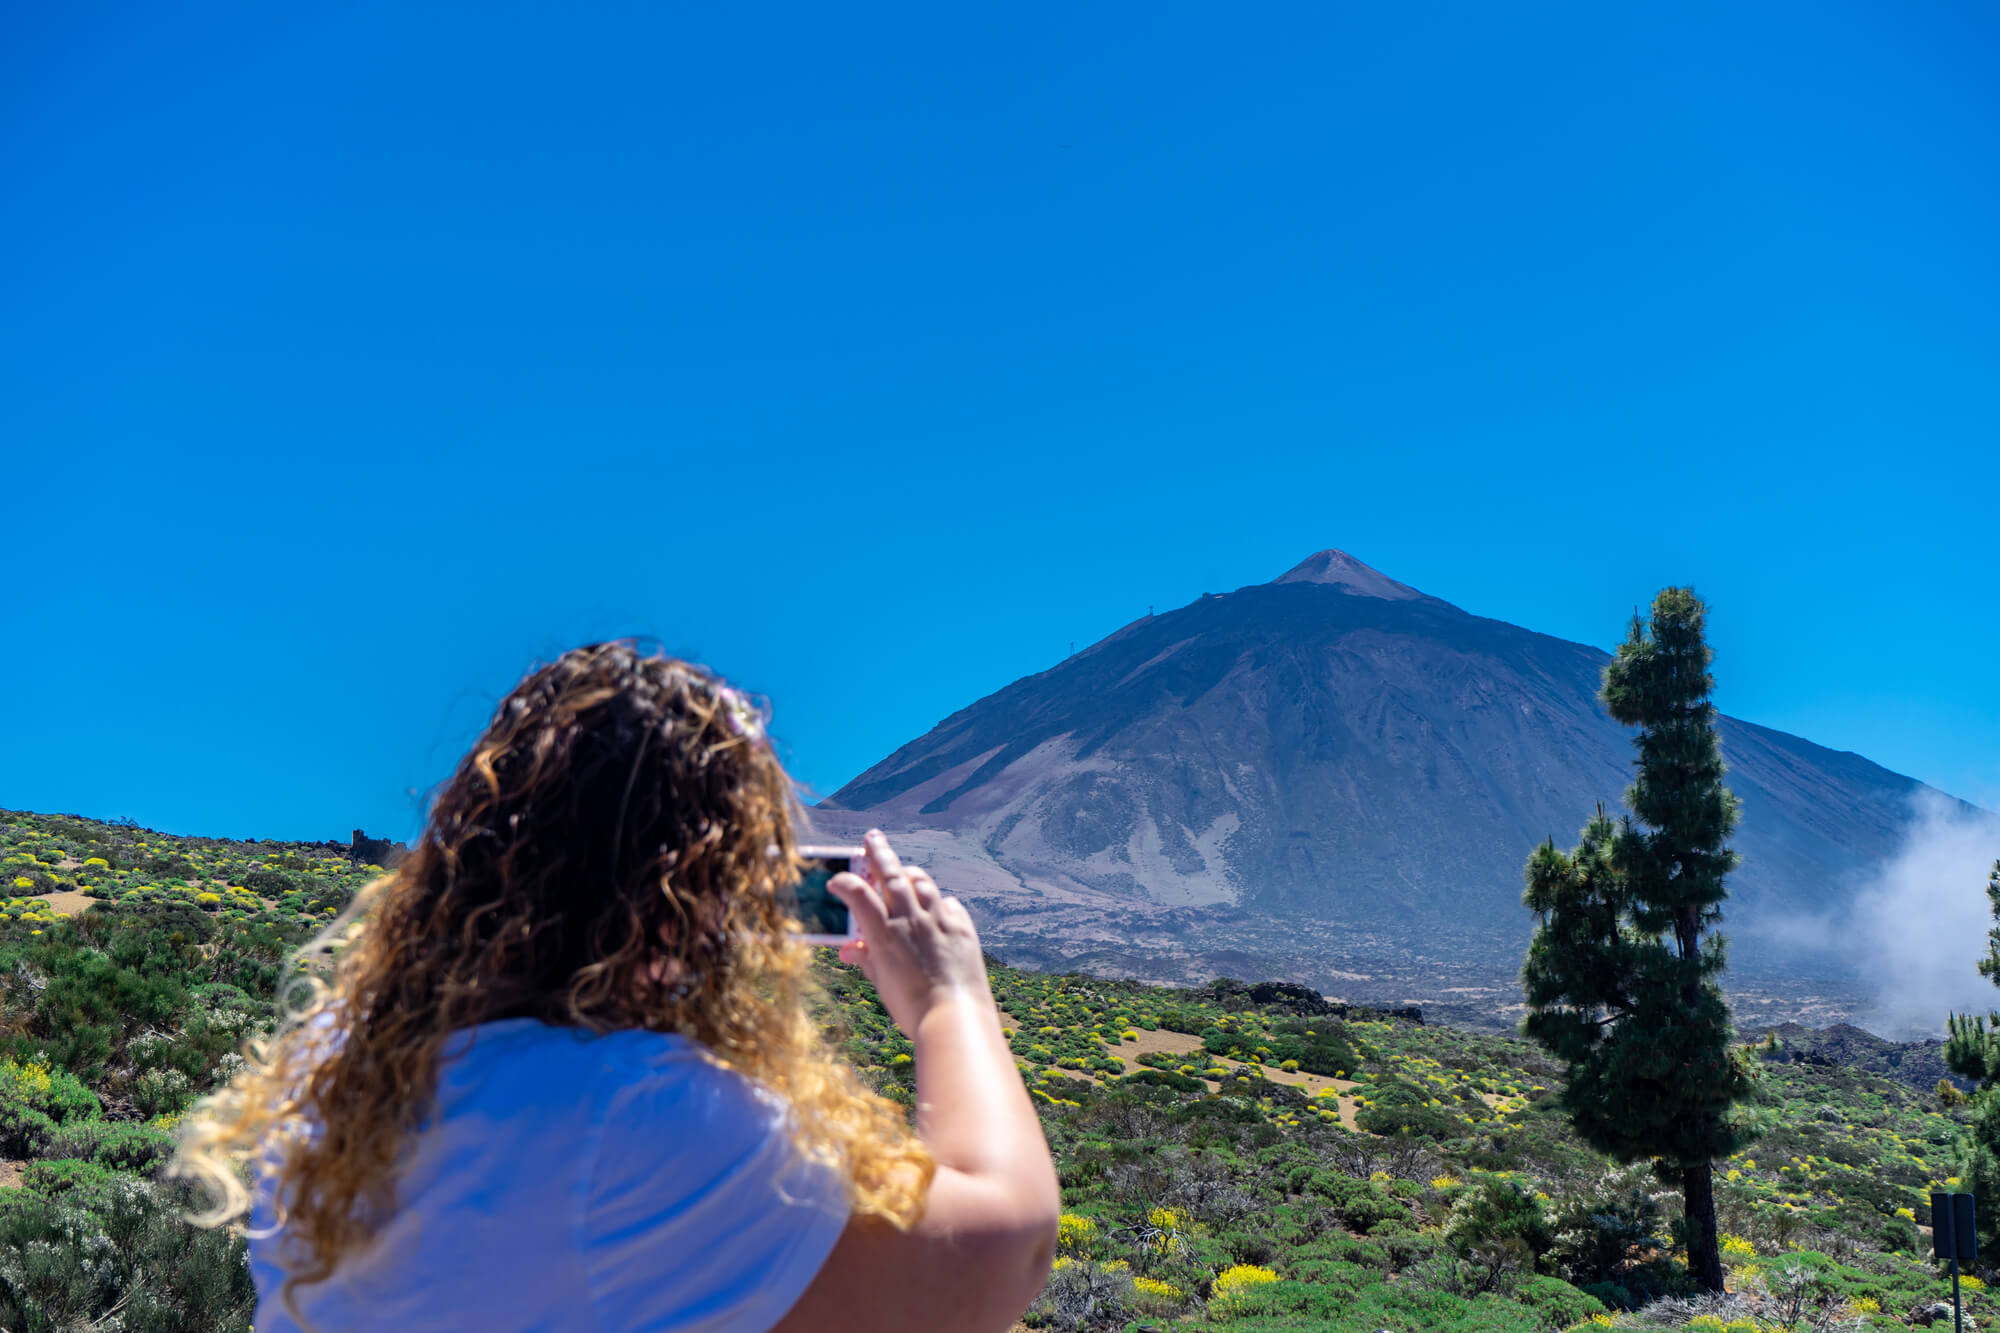 תיירת מצלמת בטלפון החכם את הר הגעש טיידה בטנריף, האיים הקנריים.    <a href="https://depositphotos.com. ">איור: depositphotos.com</a> 